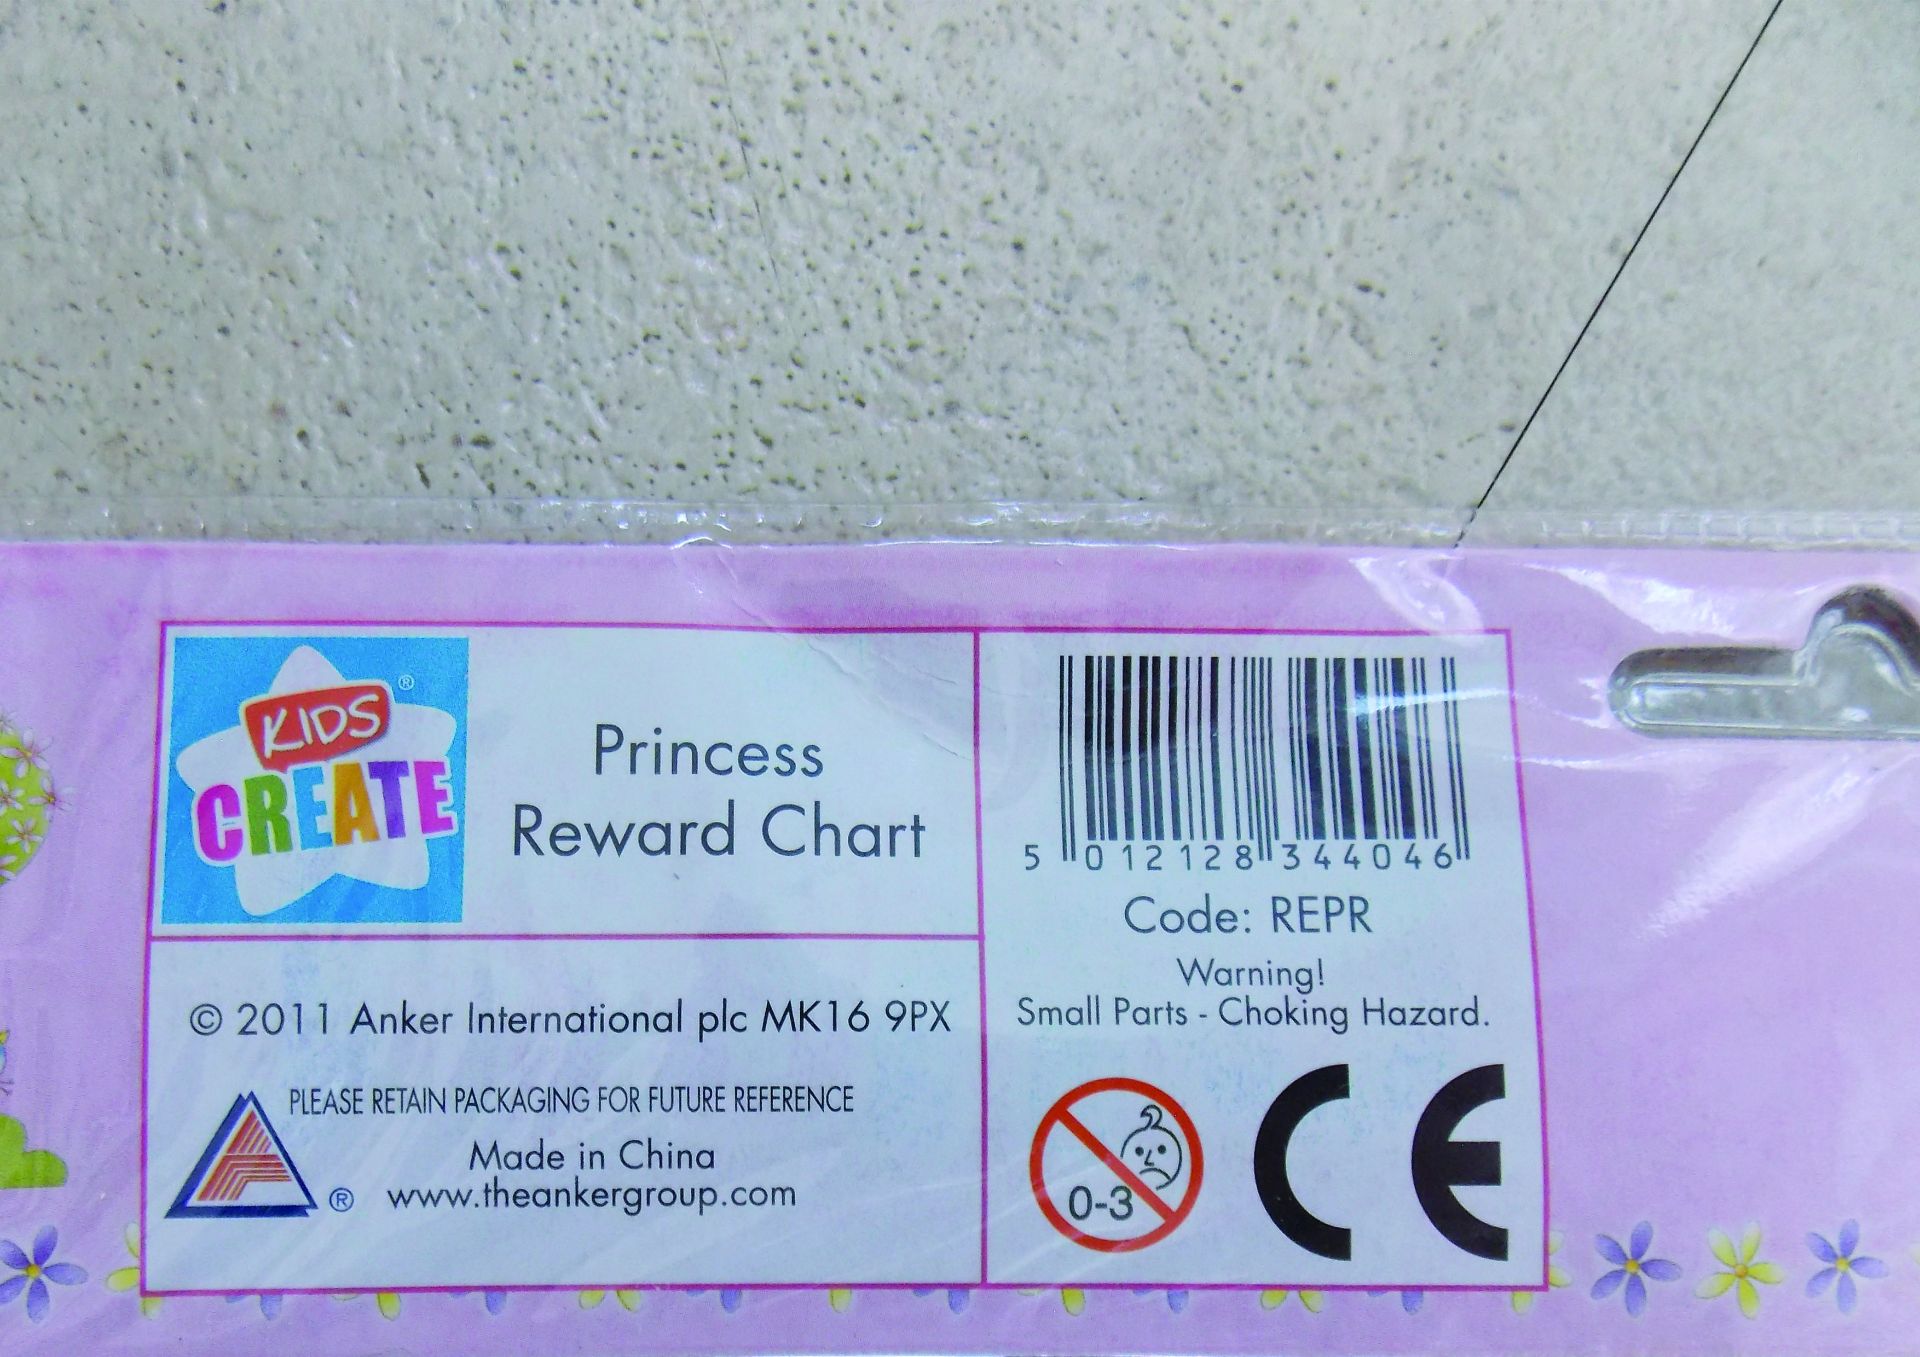 36x Princess Reward Charts - Image 2 of 6